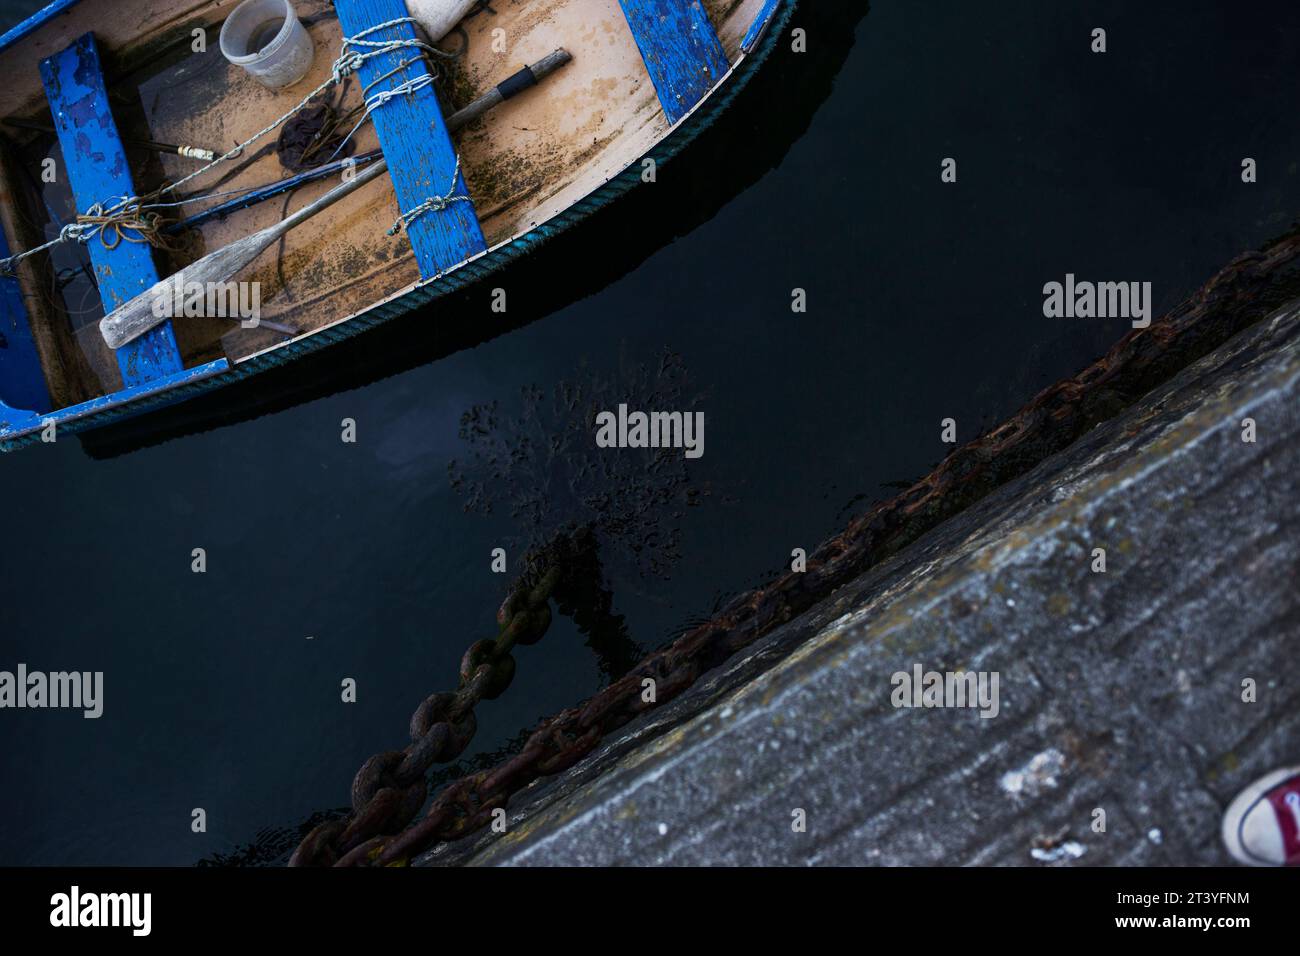 Mevagissey in Cornwall-Serie – kobaltblau lackiertes kleines Boot im Kanu-Stil mit Affen Stockfoto